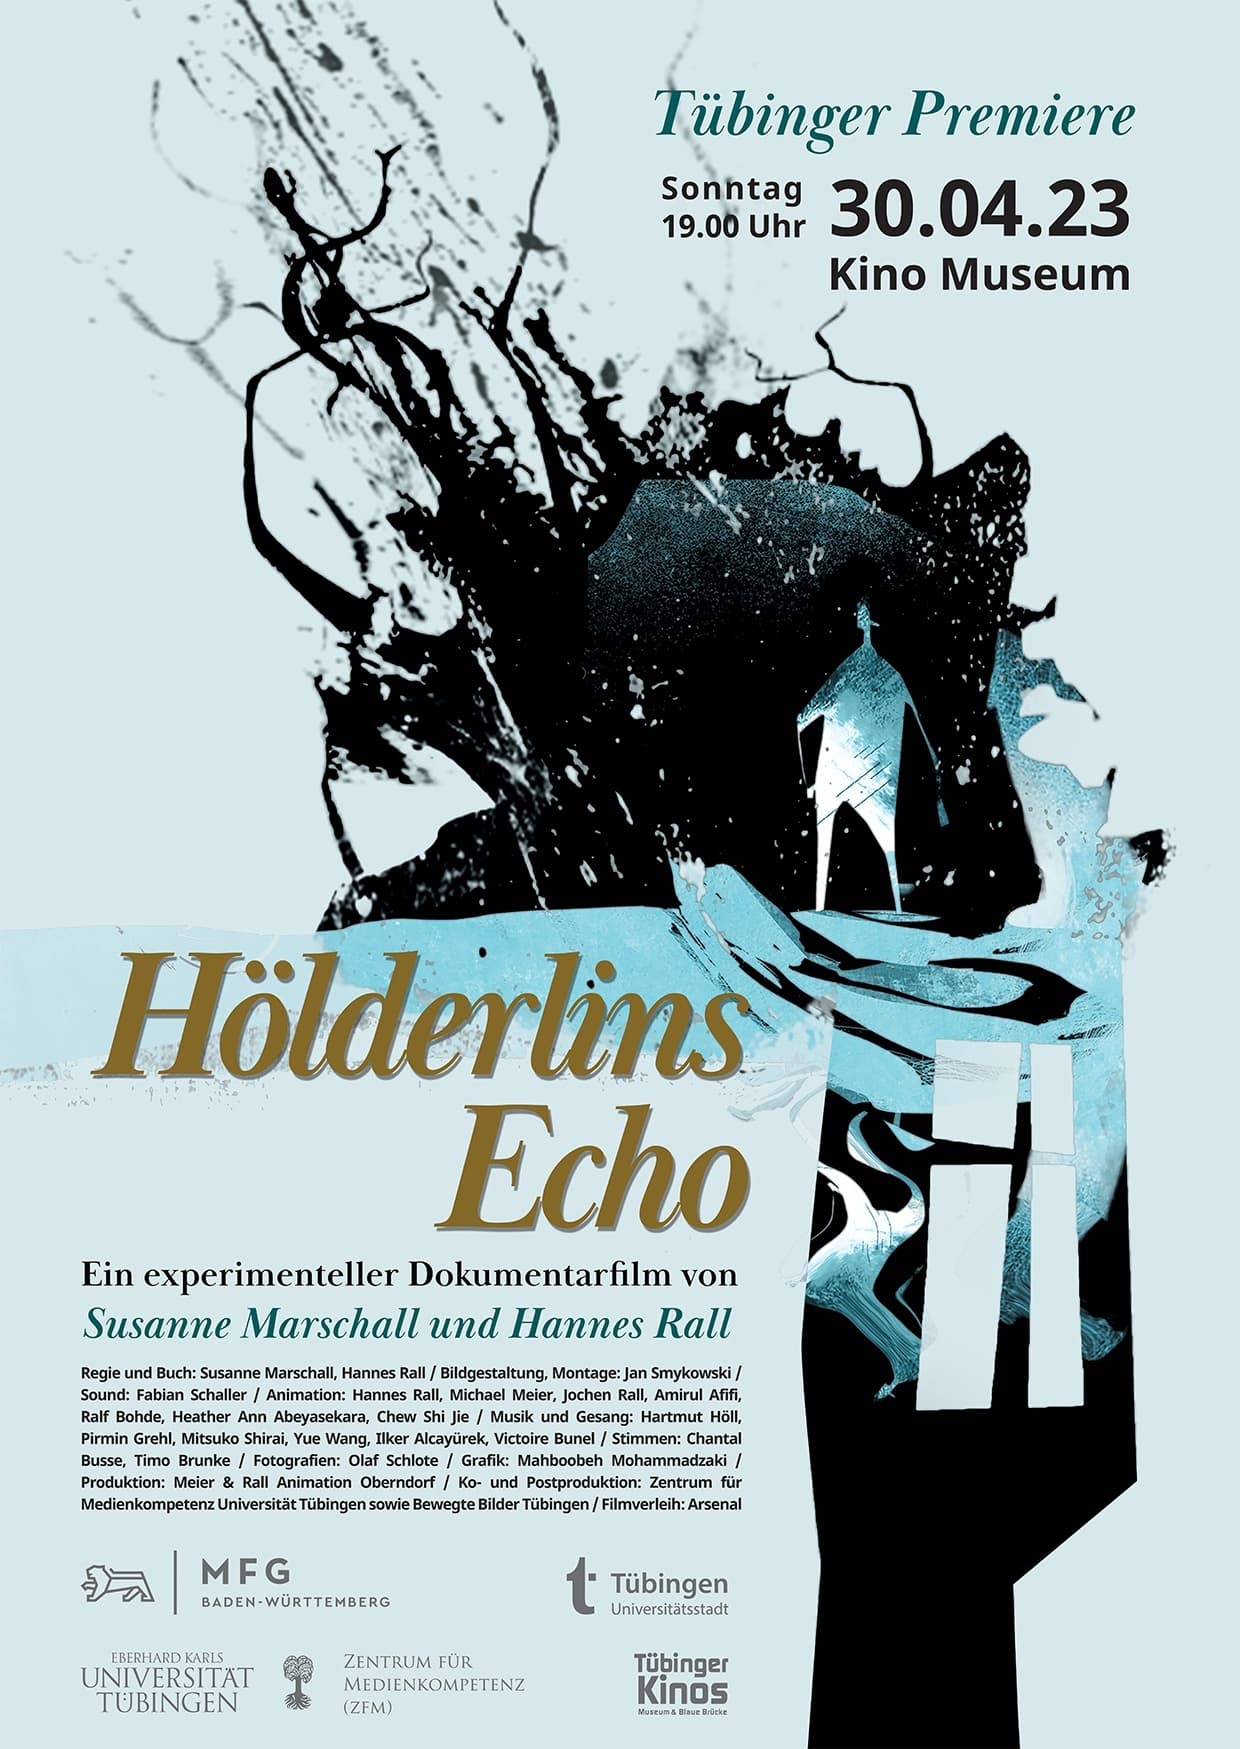 Hölderlin’s Echo